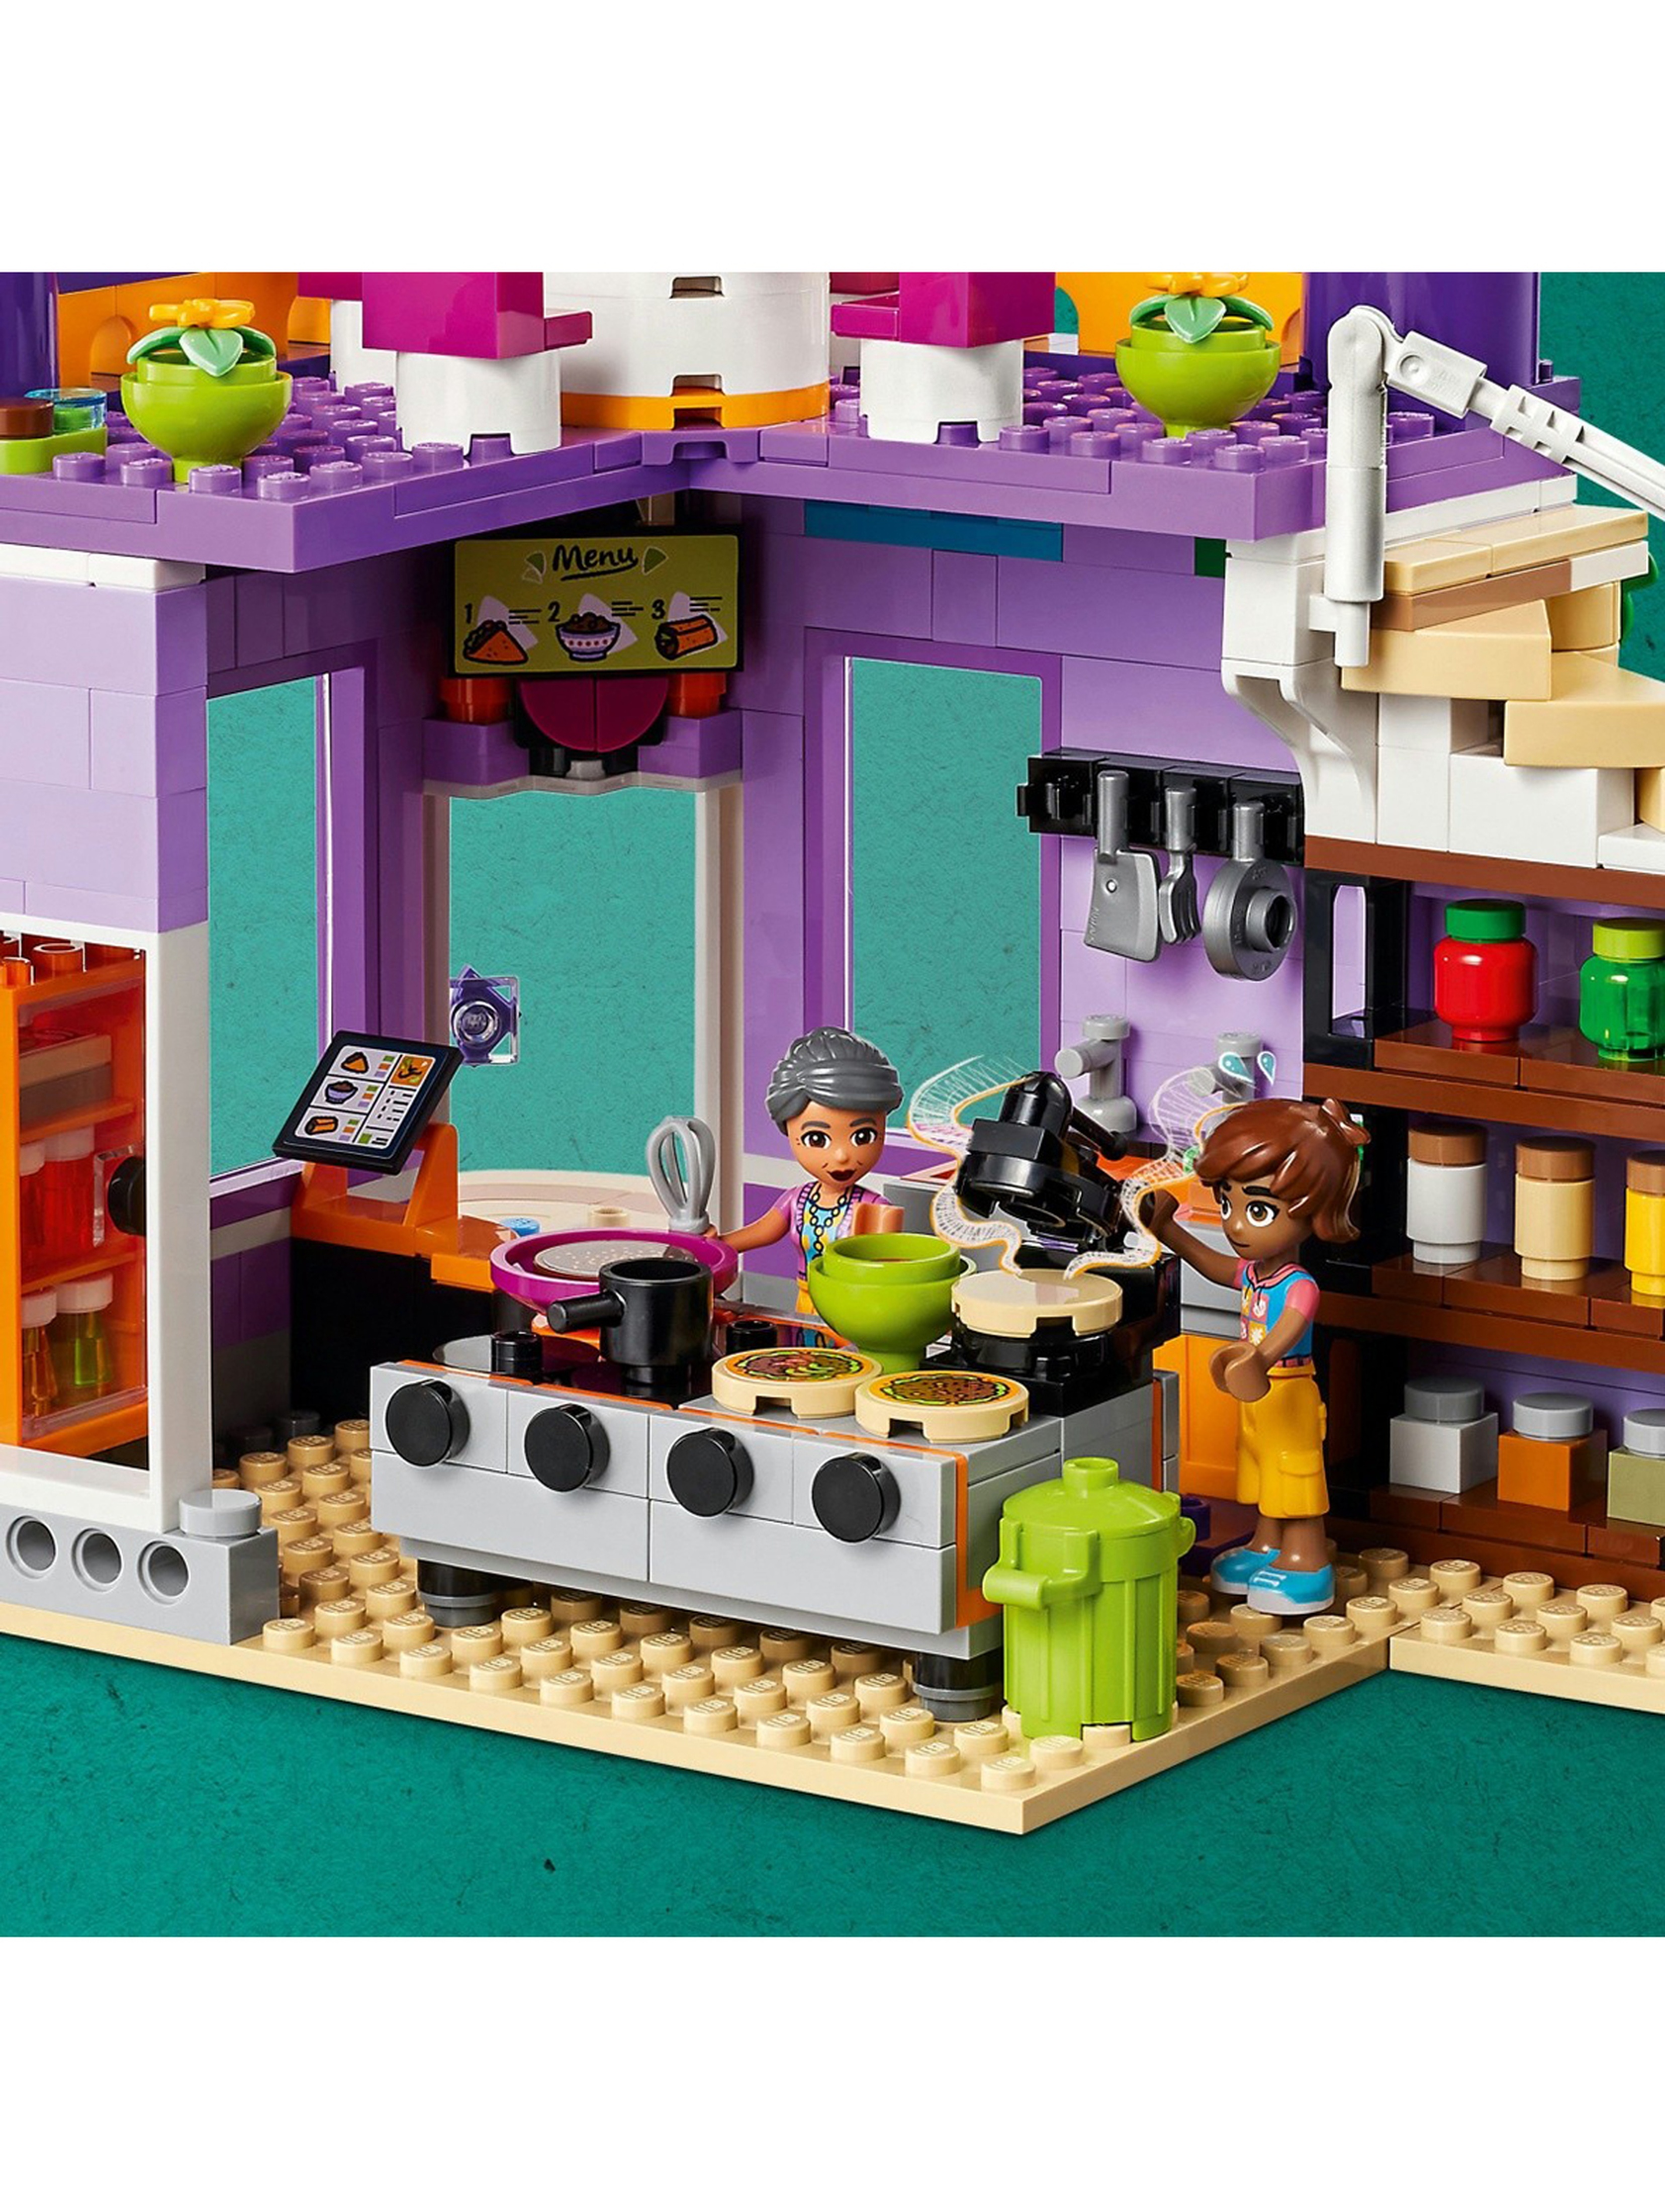 Klocki LEGO Friends 41747 Jadłodajnia w Heartlake - 695 elementów, wiek 8 +